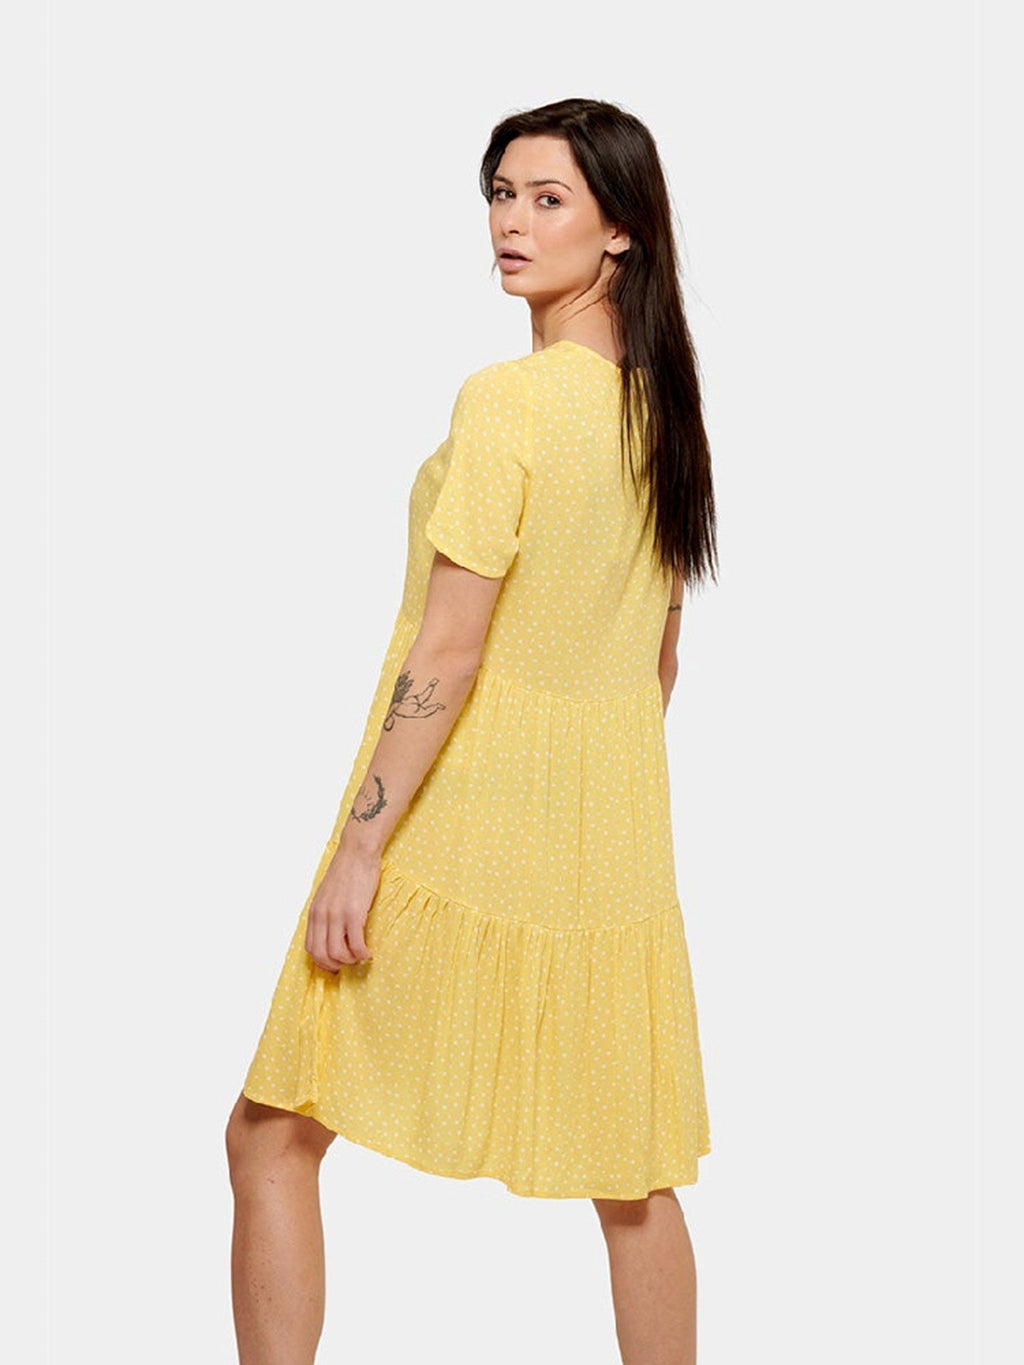 Anna bodkované šaty - žltá